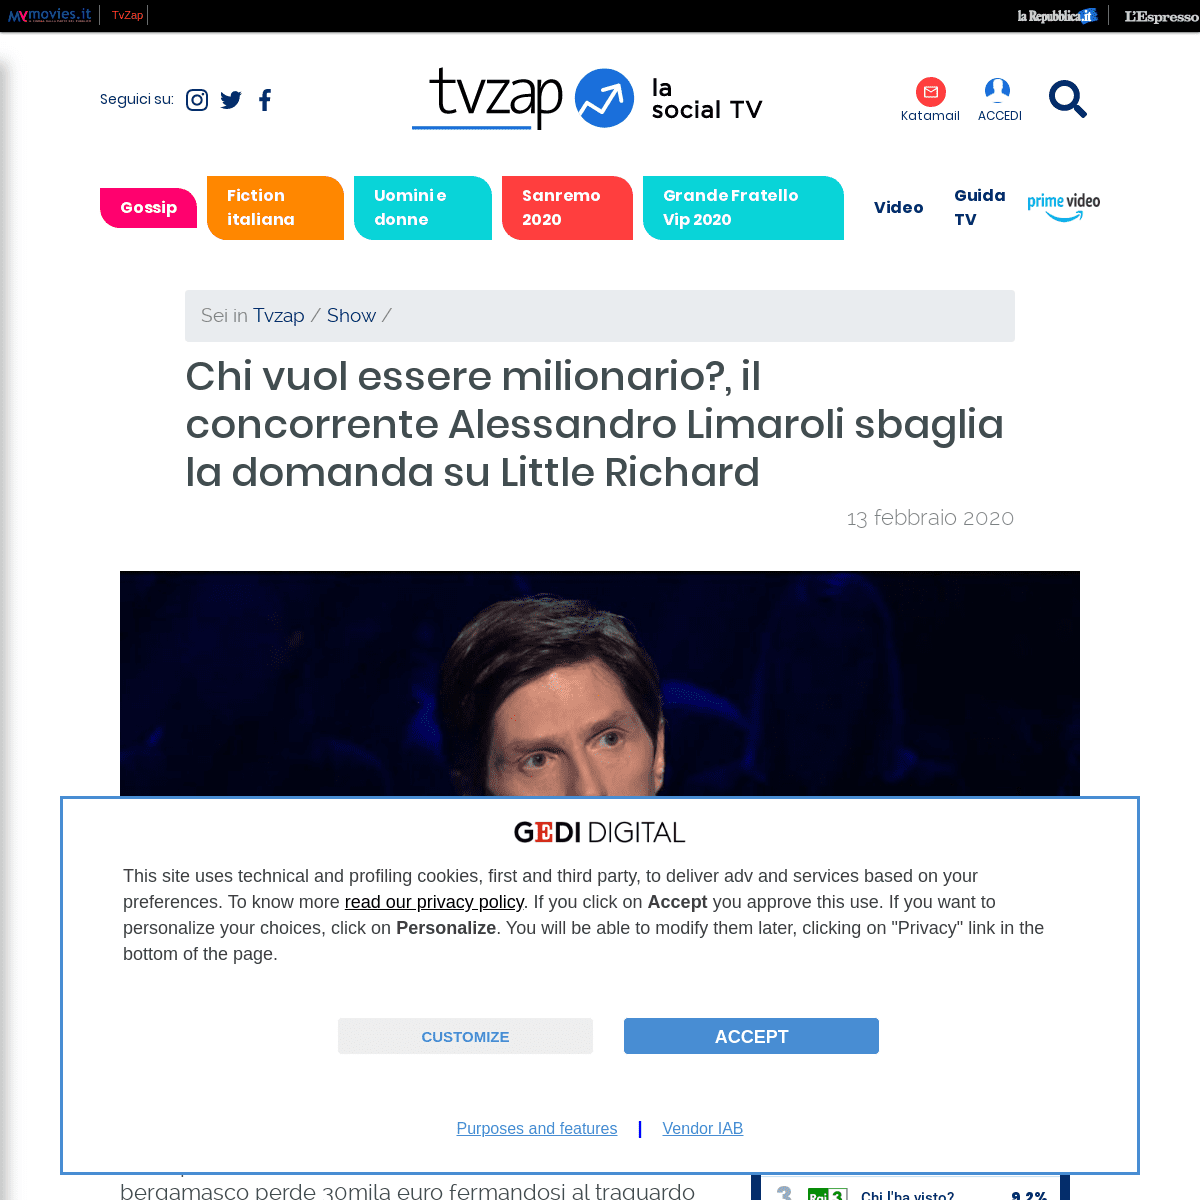 A complete backup of tvzap.kataweb.it/news/271688/chi-vuol-essere-milionario-il-concorrente-alessandro-limaroli-sbaglia-la-doman